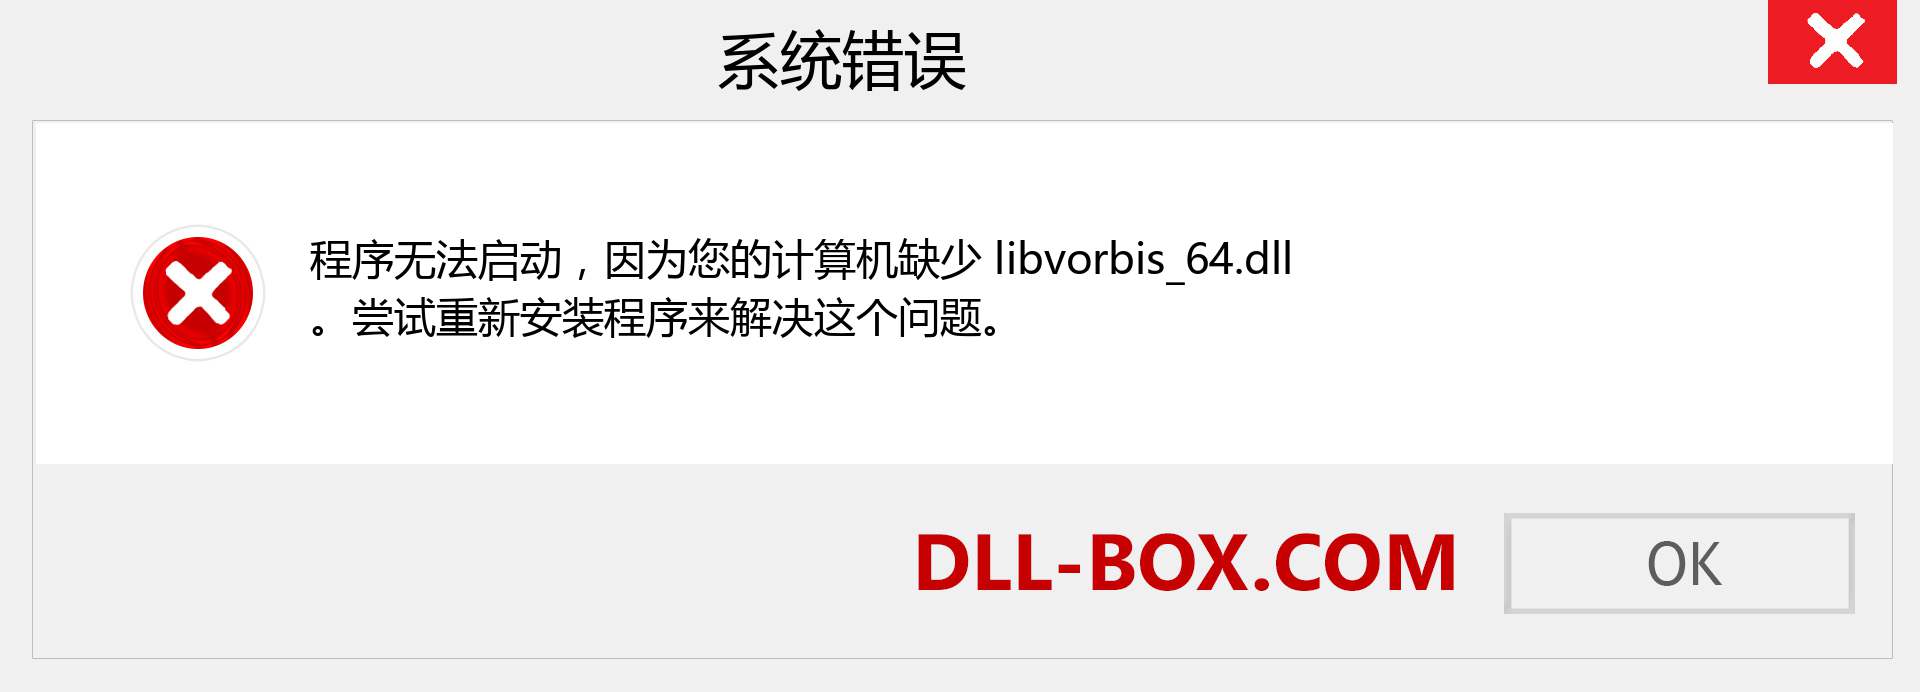 libvorbis_64.dll 文件丢失？。 适用于 Windows 7、8、10 的下载 - 修复 Windows、照片、图像上的 libvorbis_64 dll 丢失错误